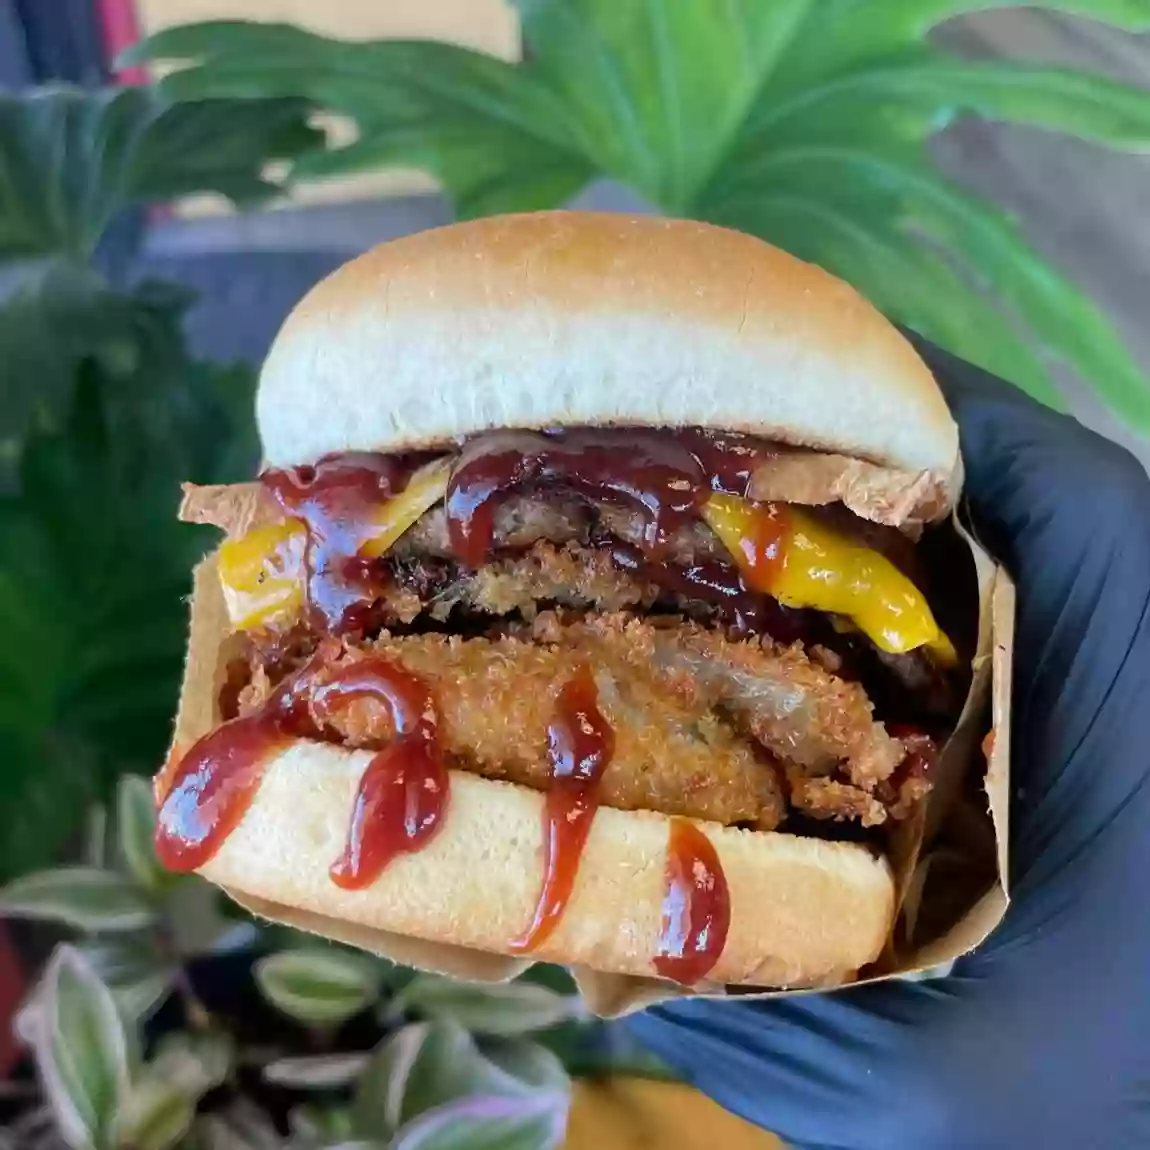 Nice Burger 100% Vegan - Santa Ana